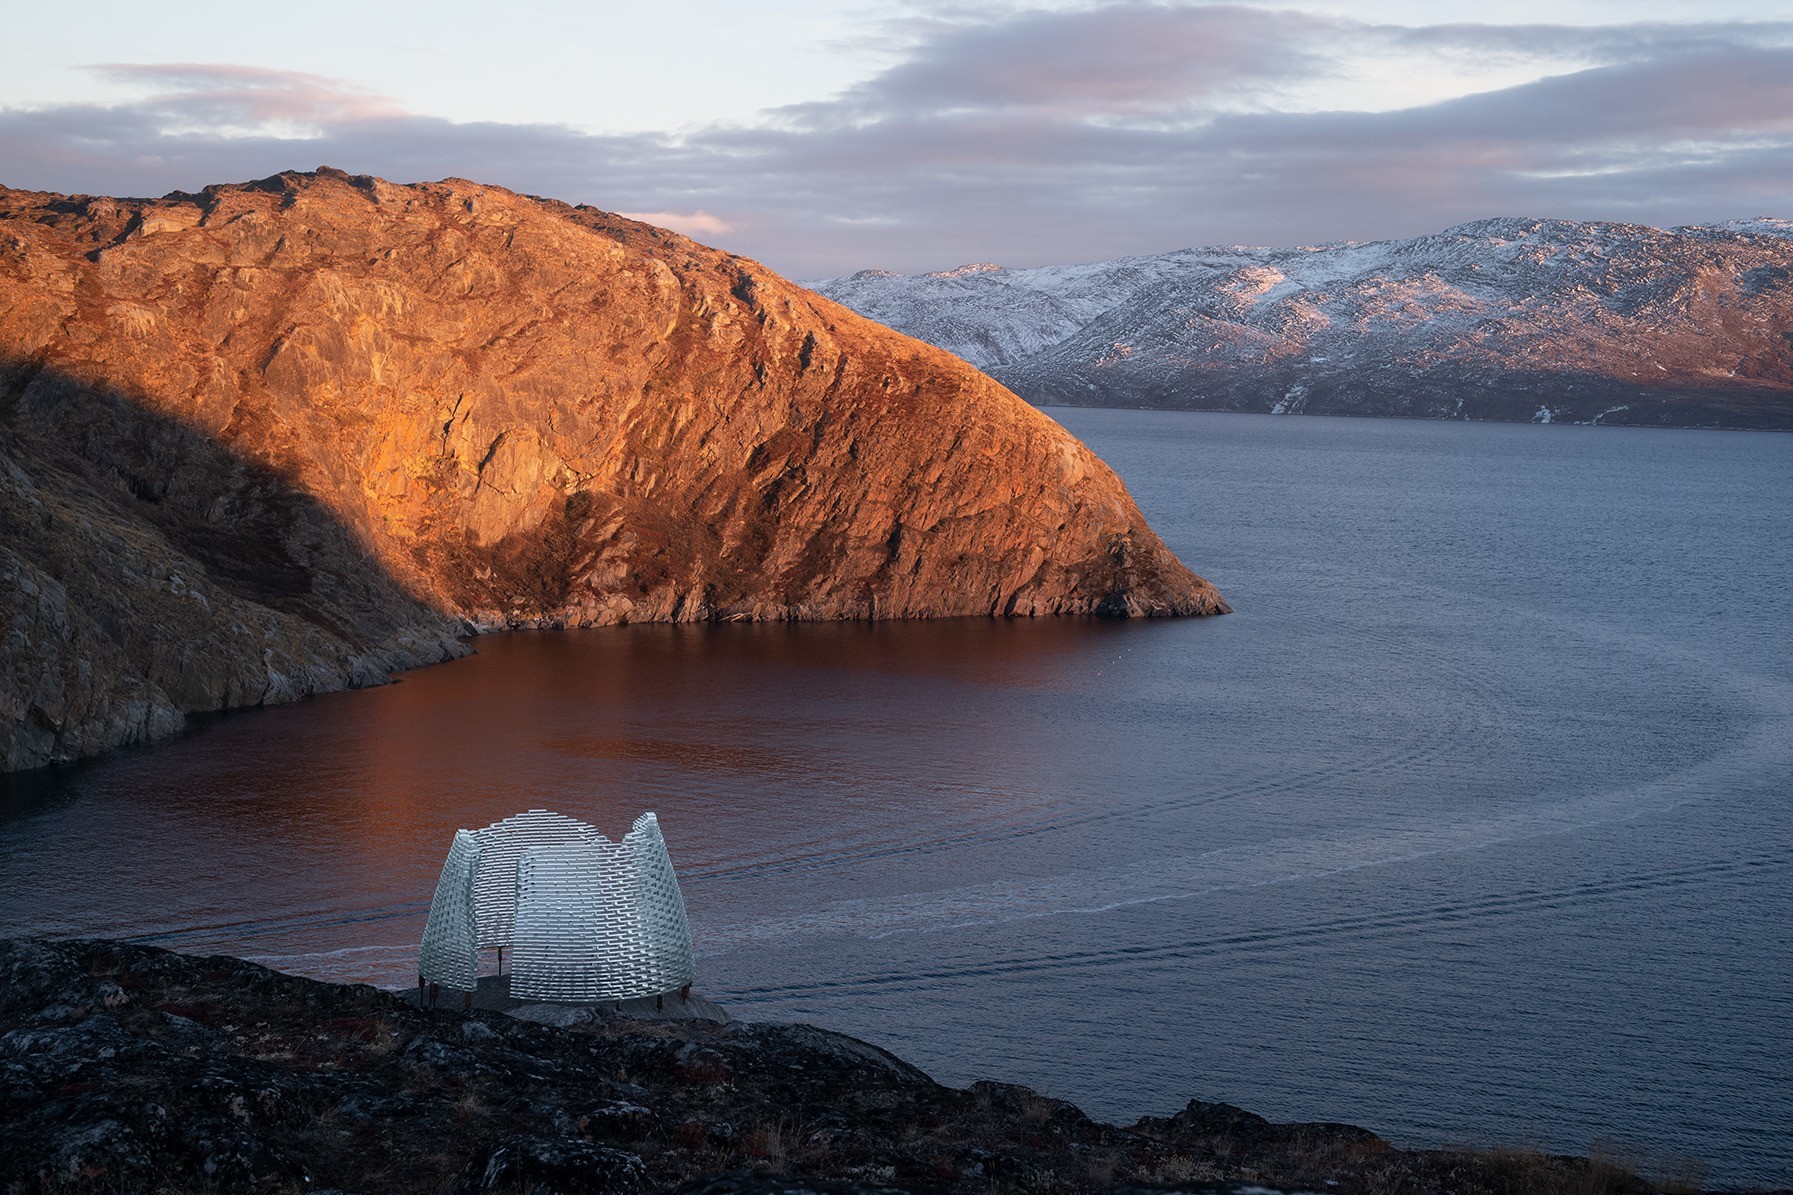 Le pavillon, situé à proximité de deux fjords a été construit au milieu d'un paysage spectaculaire.